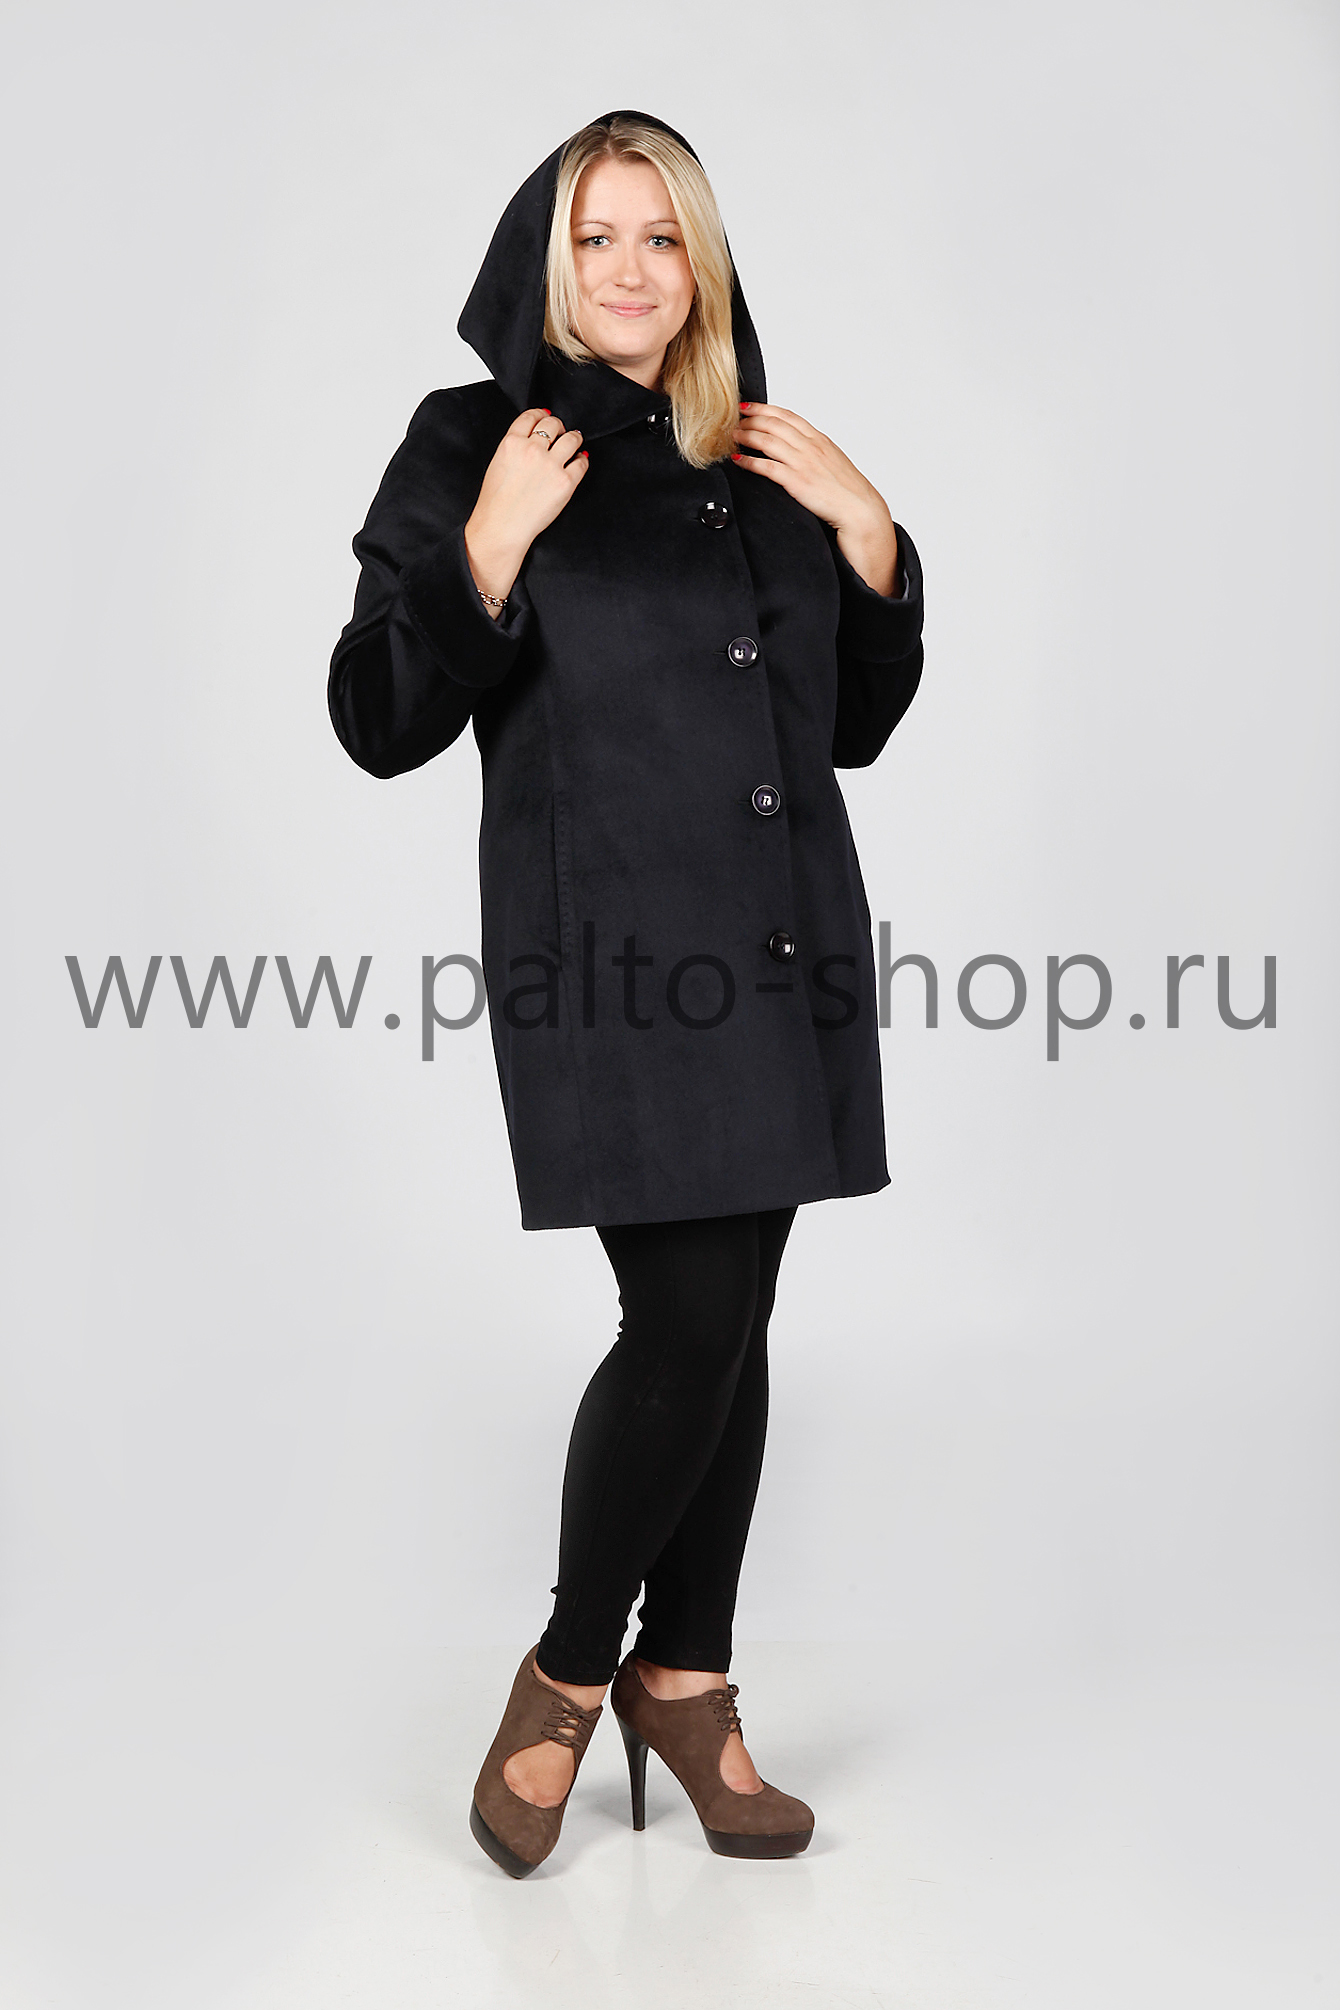 Пальто с капюшоном Николь, цвет Черный, тм Valery 2000